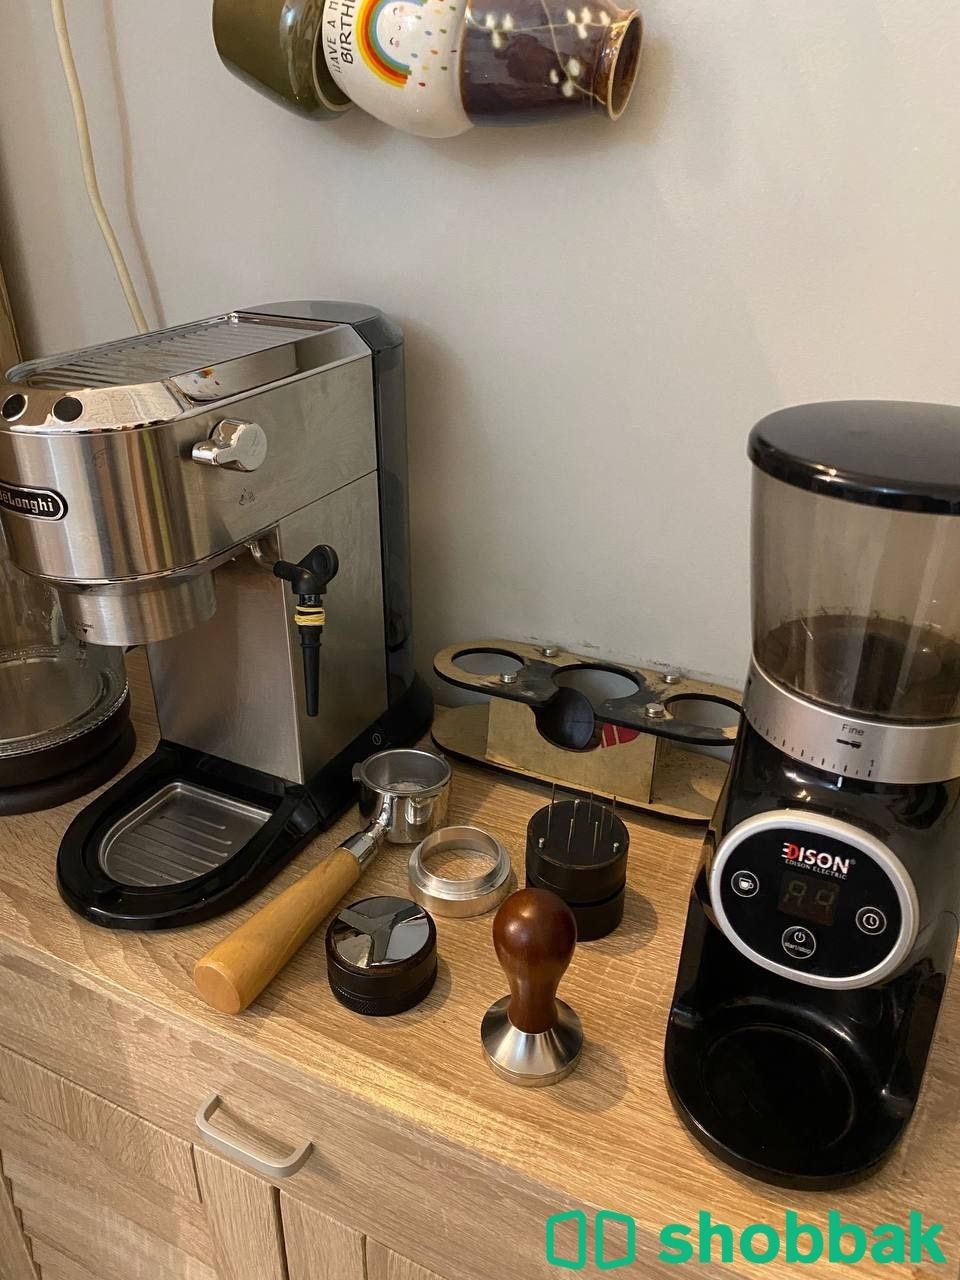 ماكينة قهوة ديلونجي ديدكا للبيع مع الادوات Shobbak Saudi Arabia